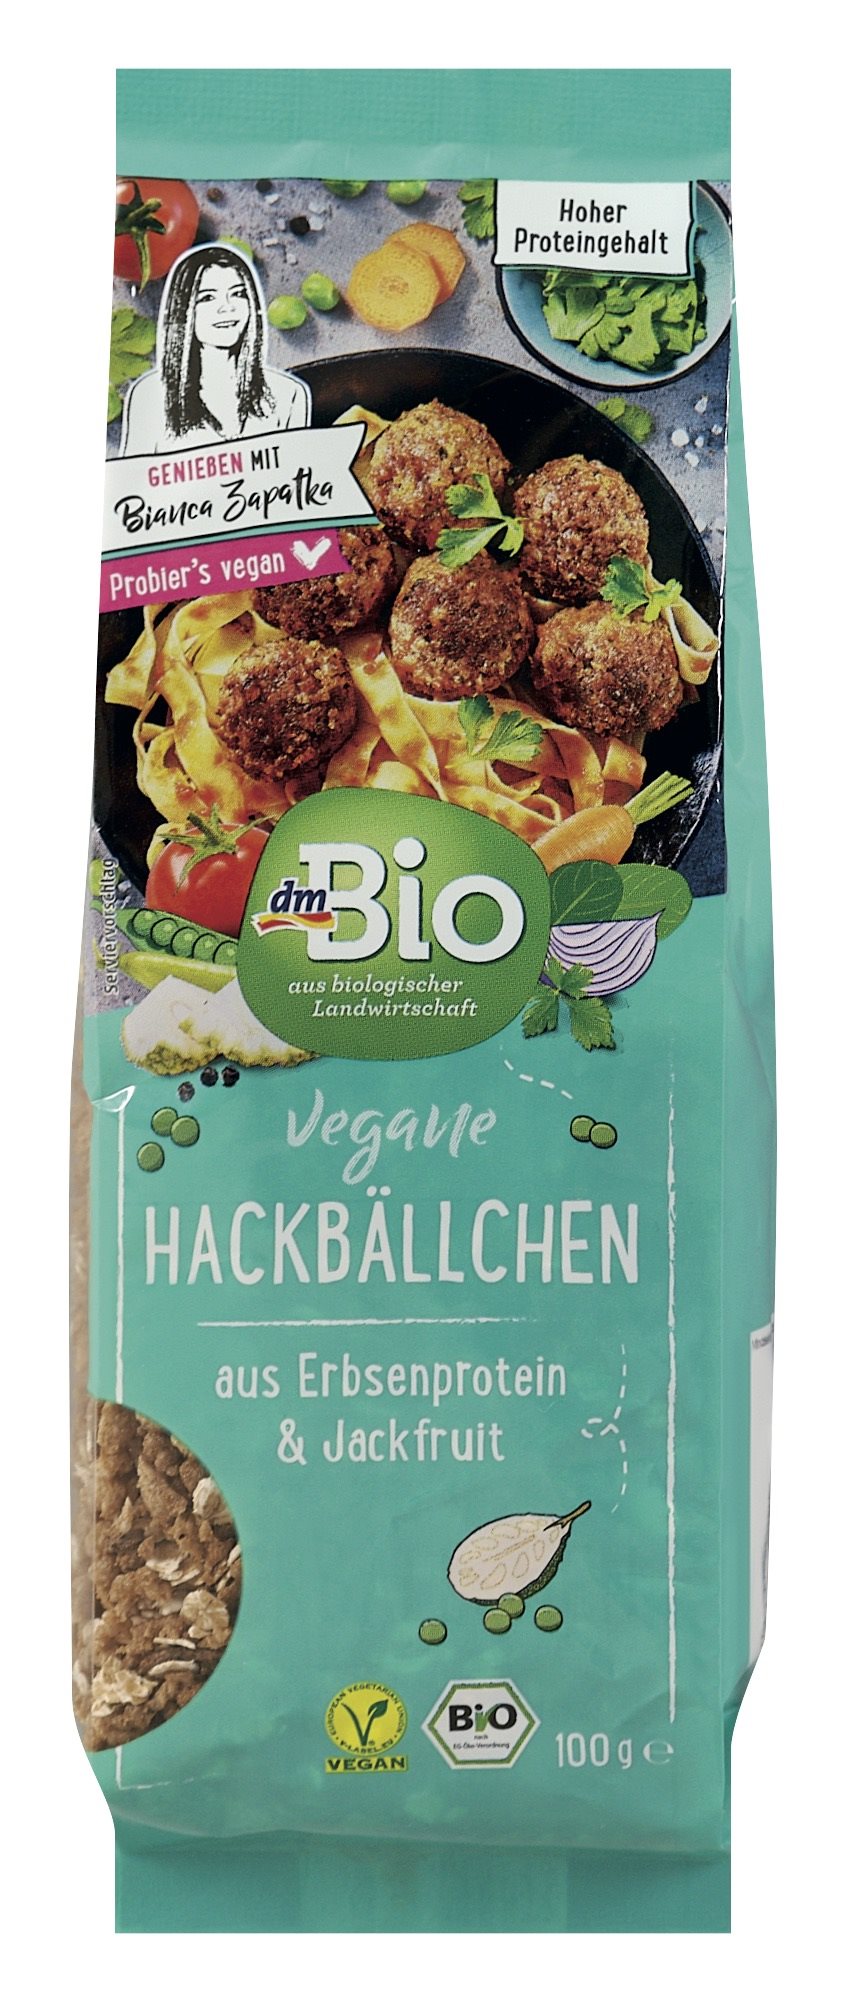 dmBio Vegane Hackbällchen Mischung aus Erbsenprotein & Jackfruit 100g 3,45 Euro